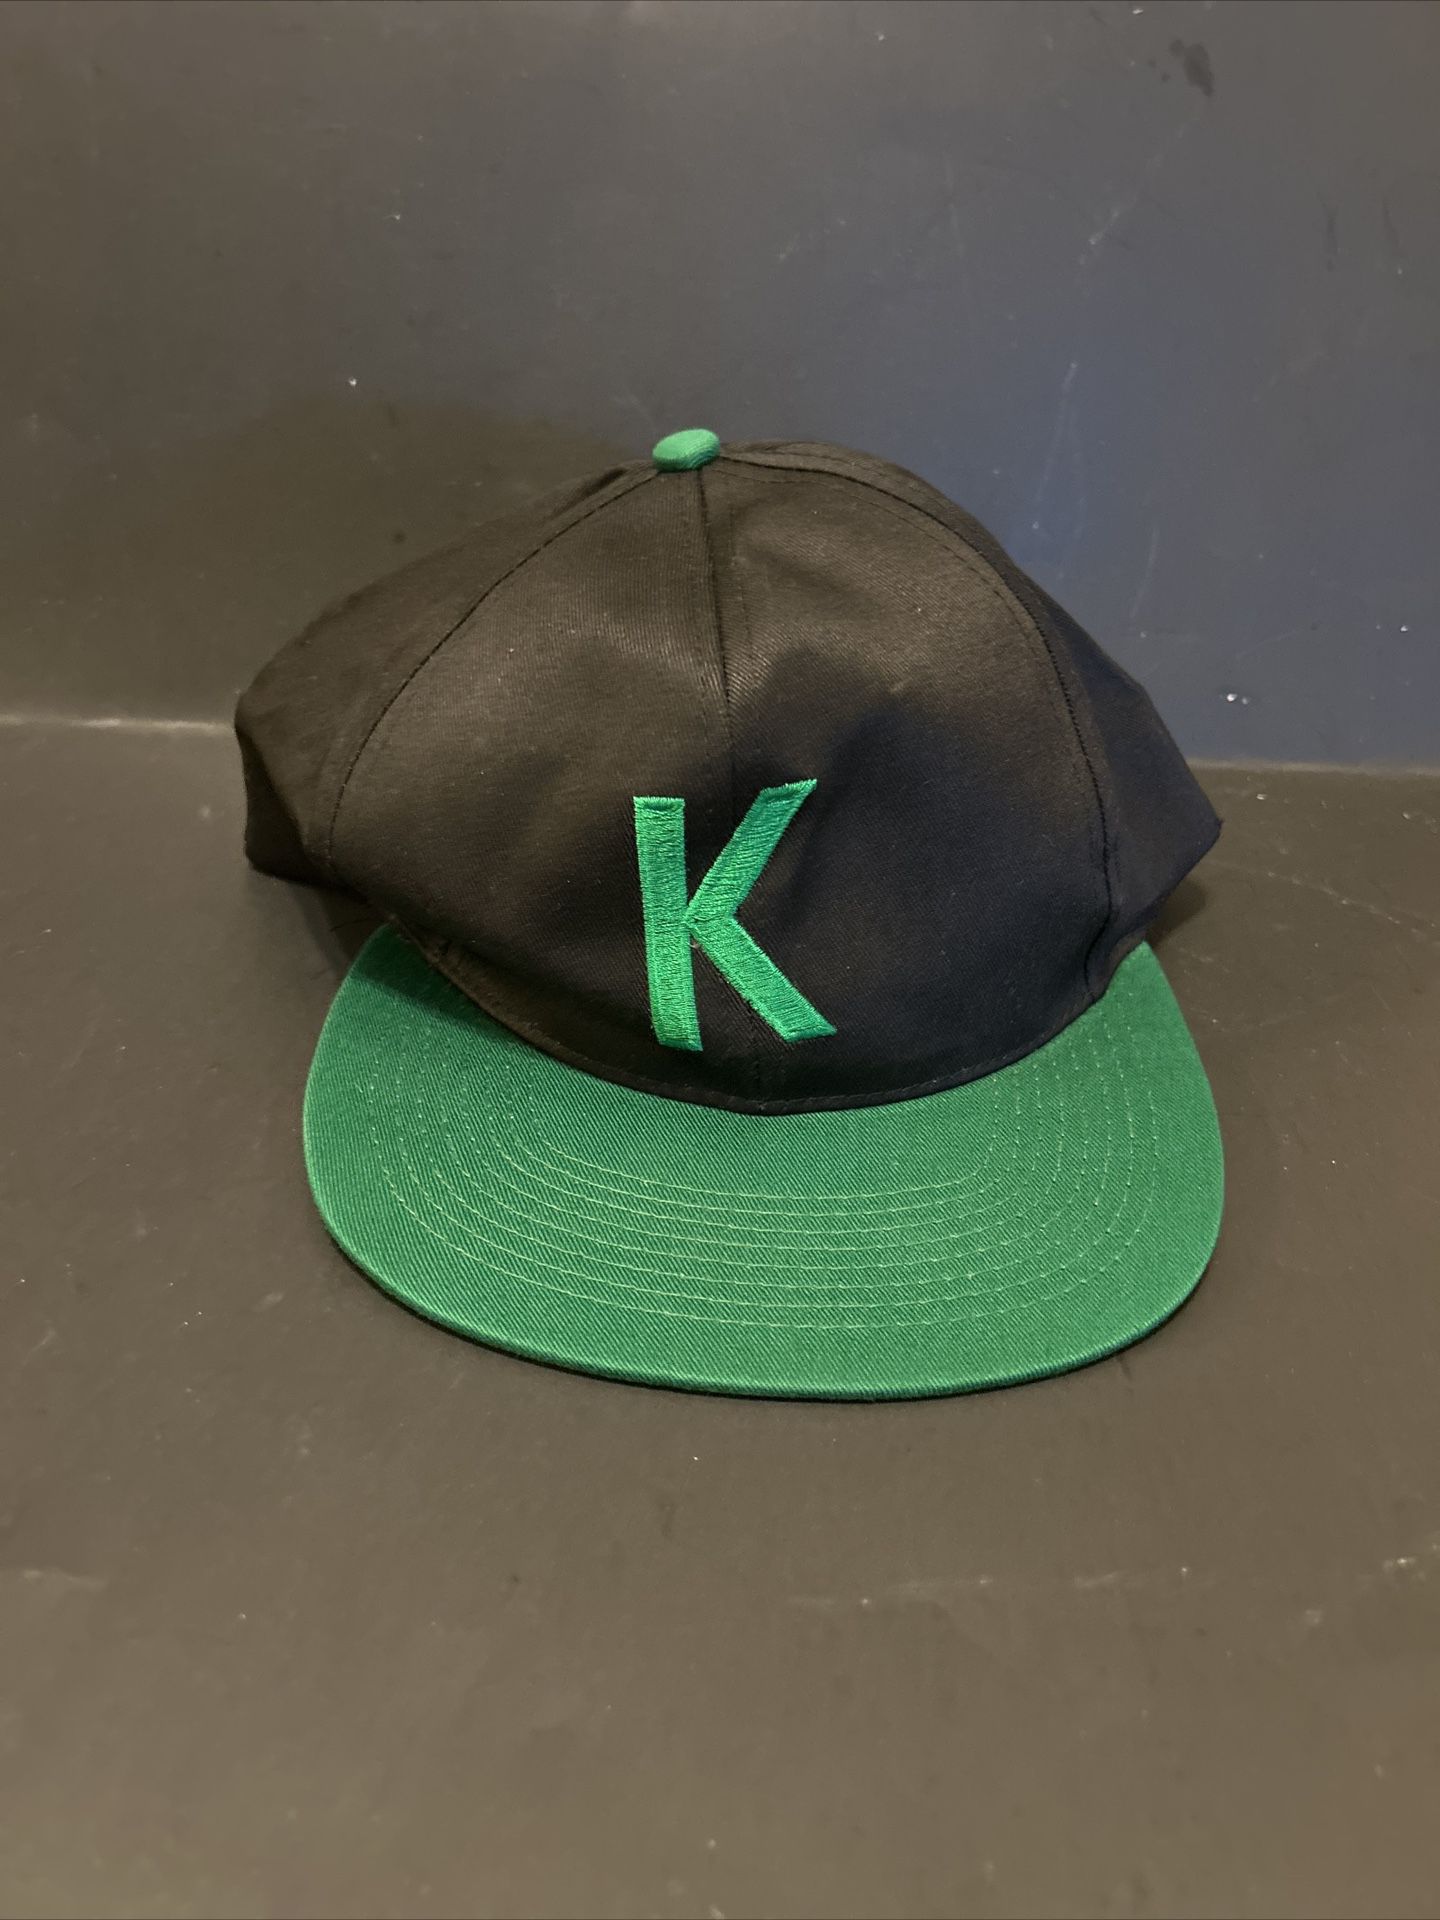 KOOL Cigarettes Promo Hat Cap Adult Adjustable Snapback 